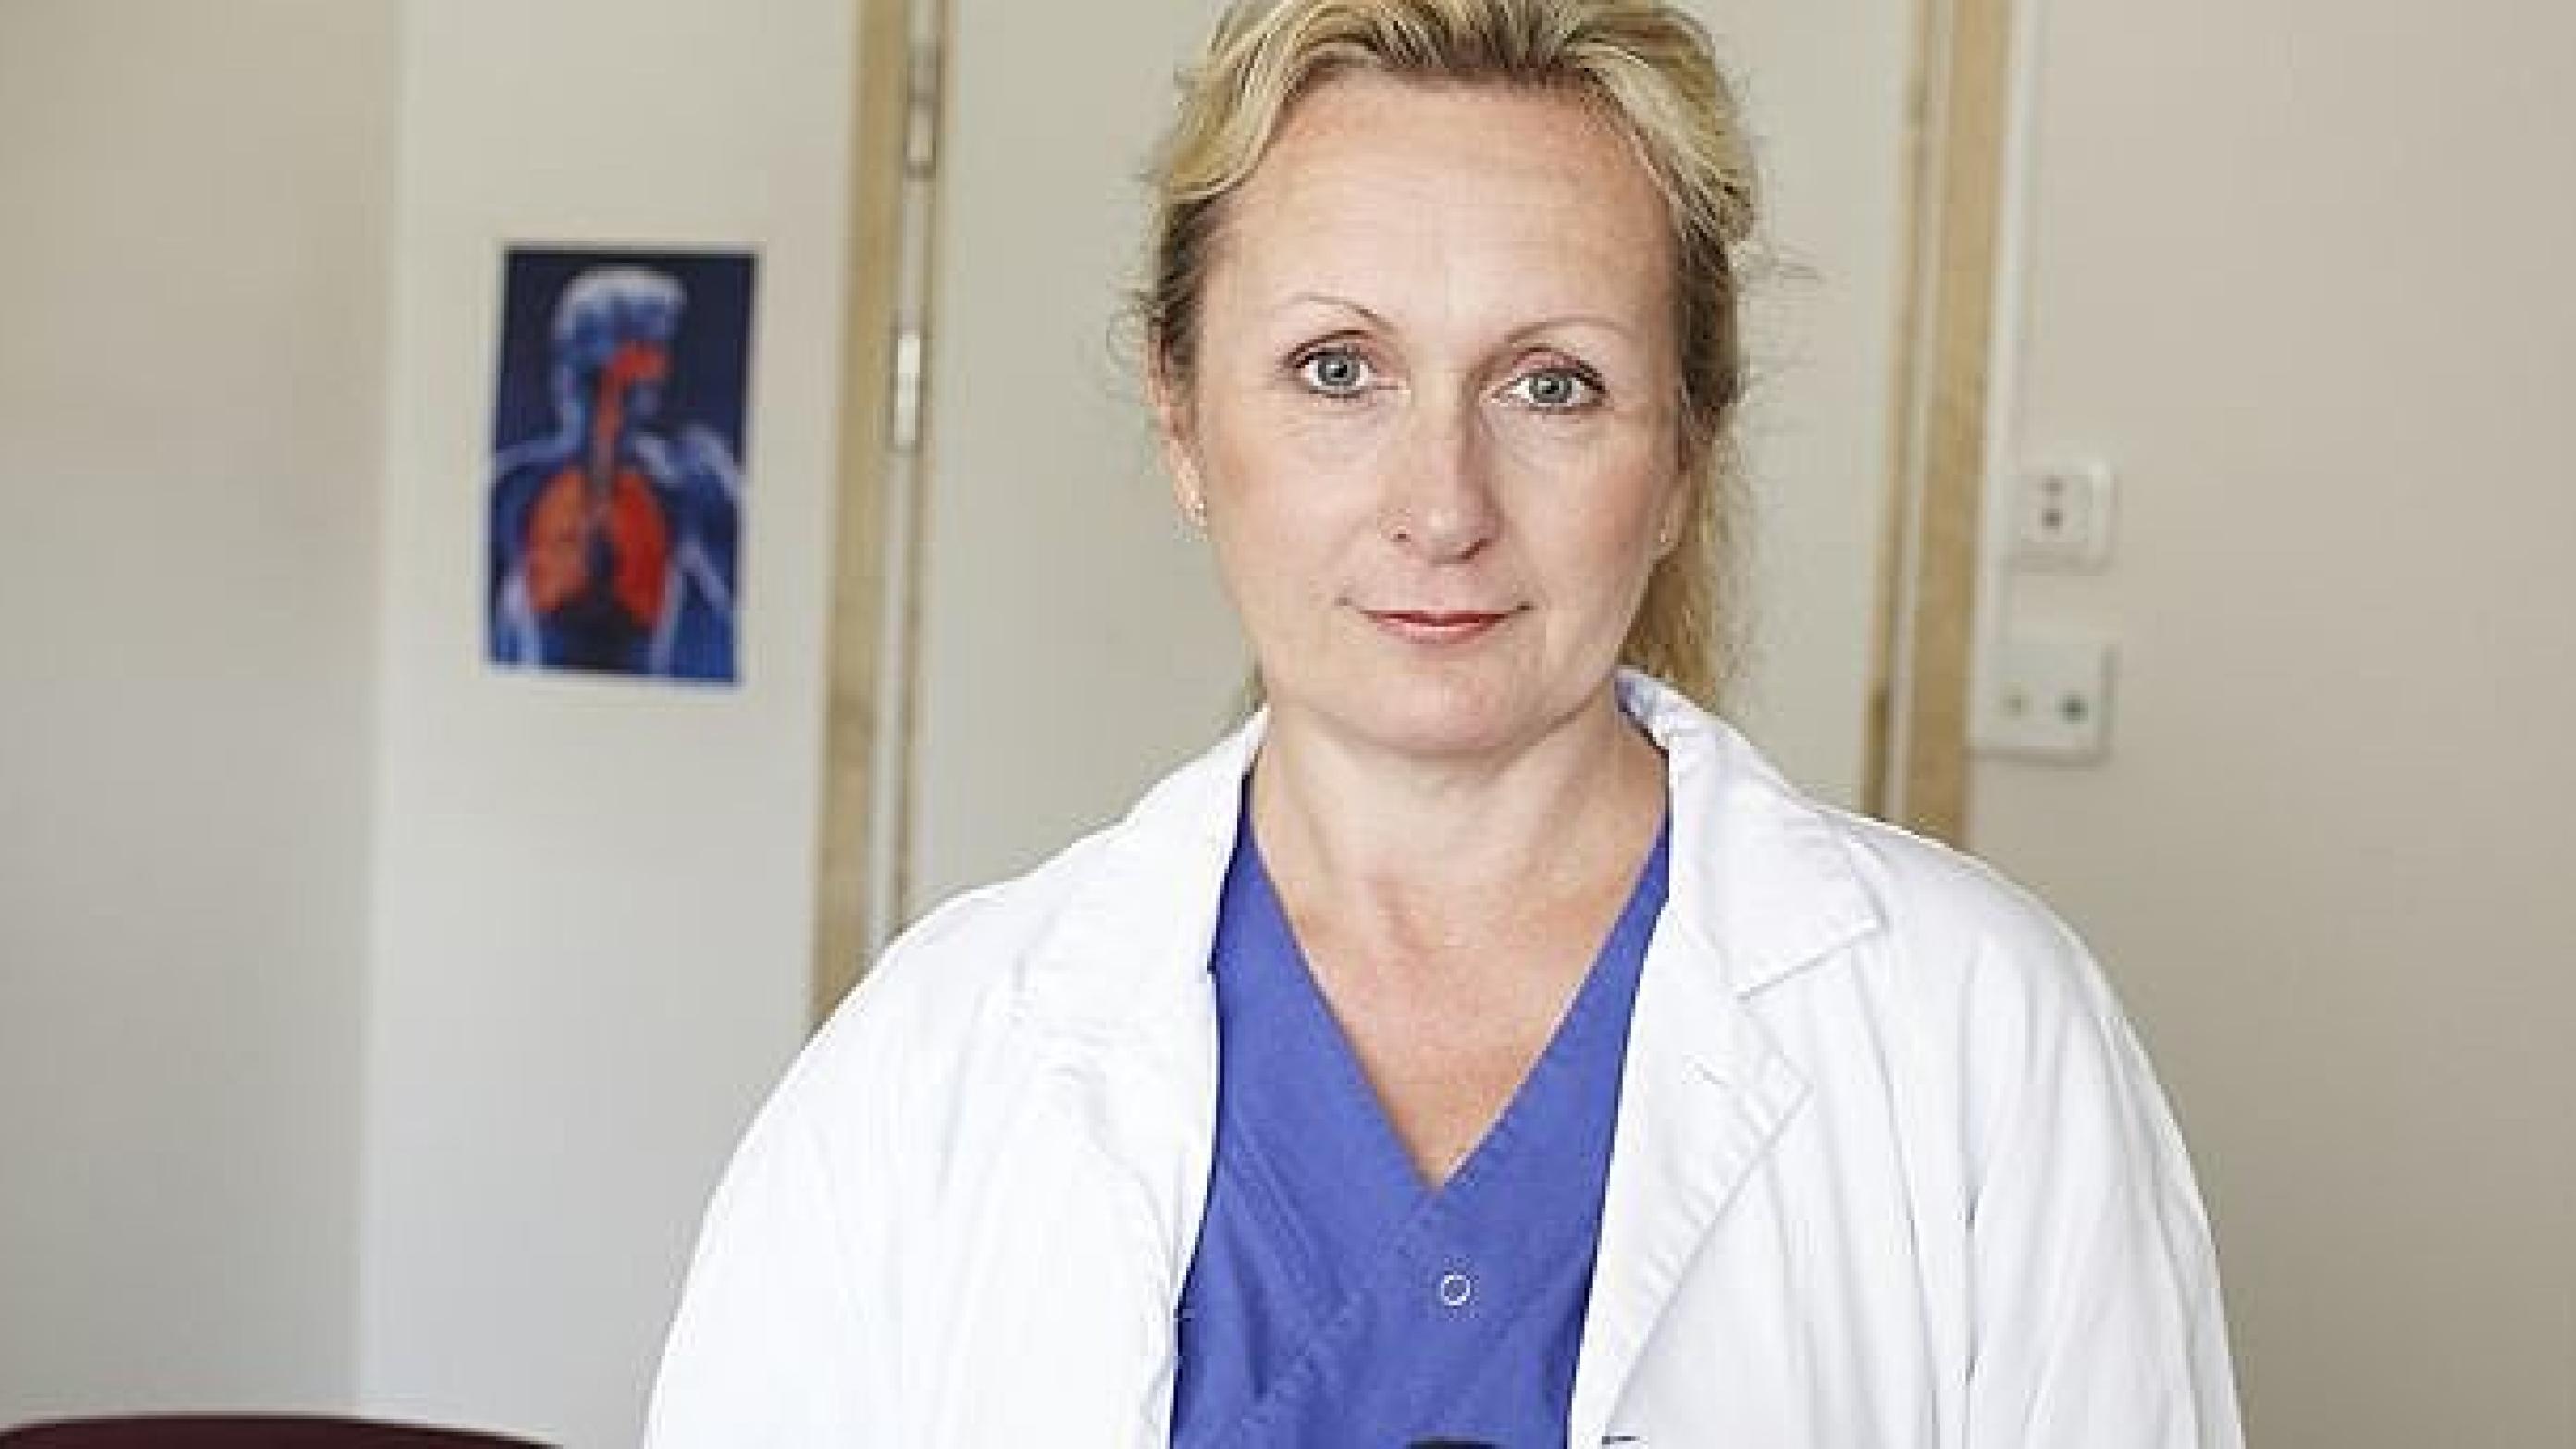 Forskningschef på Angereds Närsjukhus, Ann Ekberg Jansson, leder et af de kvalitetsregistre, der leverer data til det svenske kvalitetssystem. Foto: Angereds Närsjukhus.